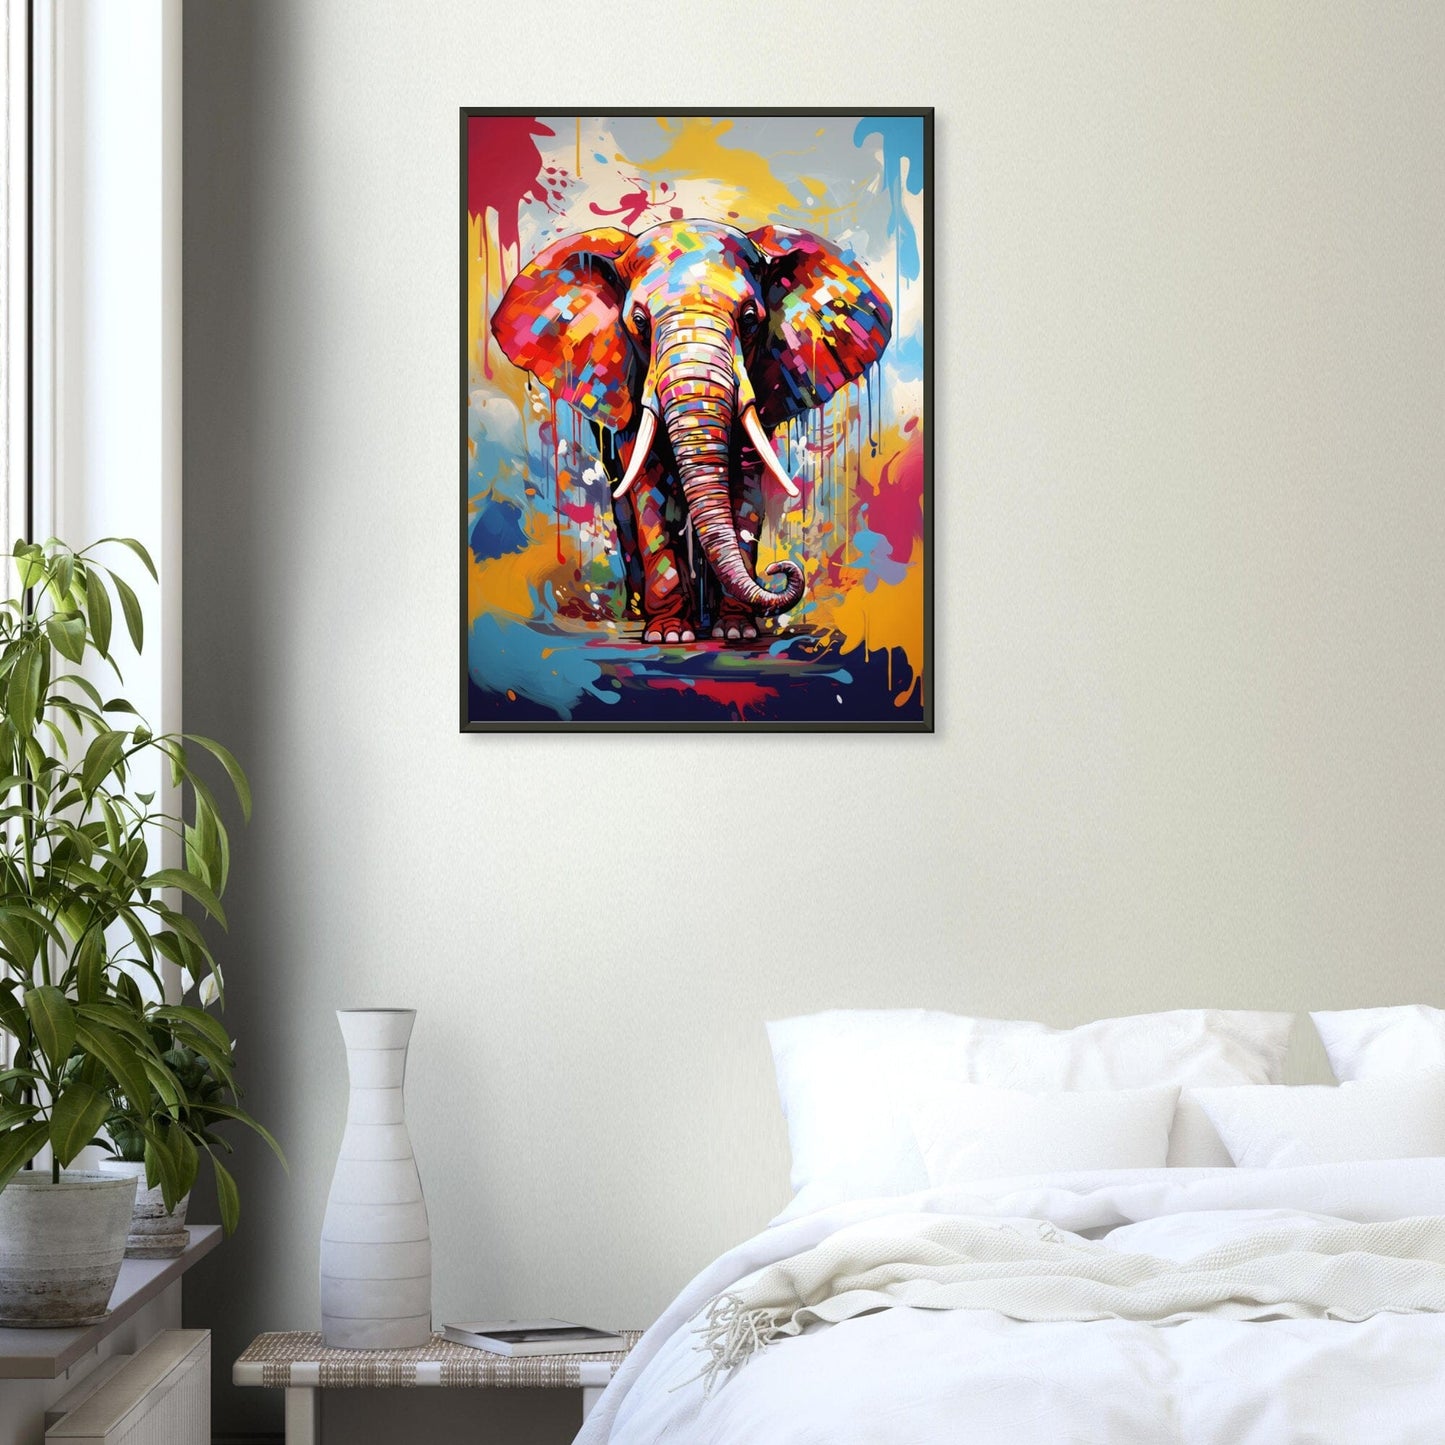 Elefantenfarben in Aquarell ein Bild aus der collections Tierbilder als Poster im Wohnzimmer